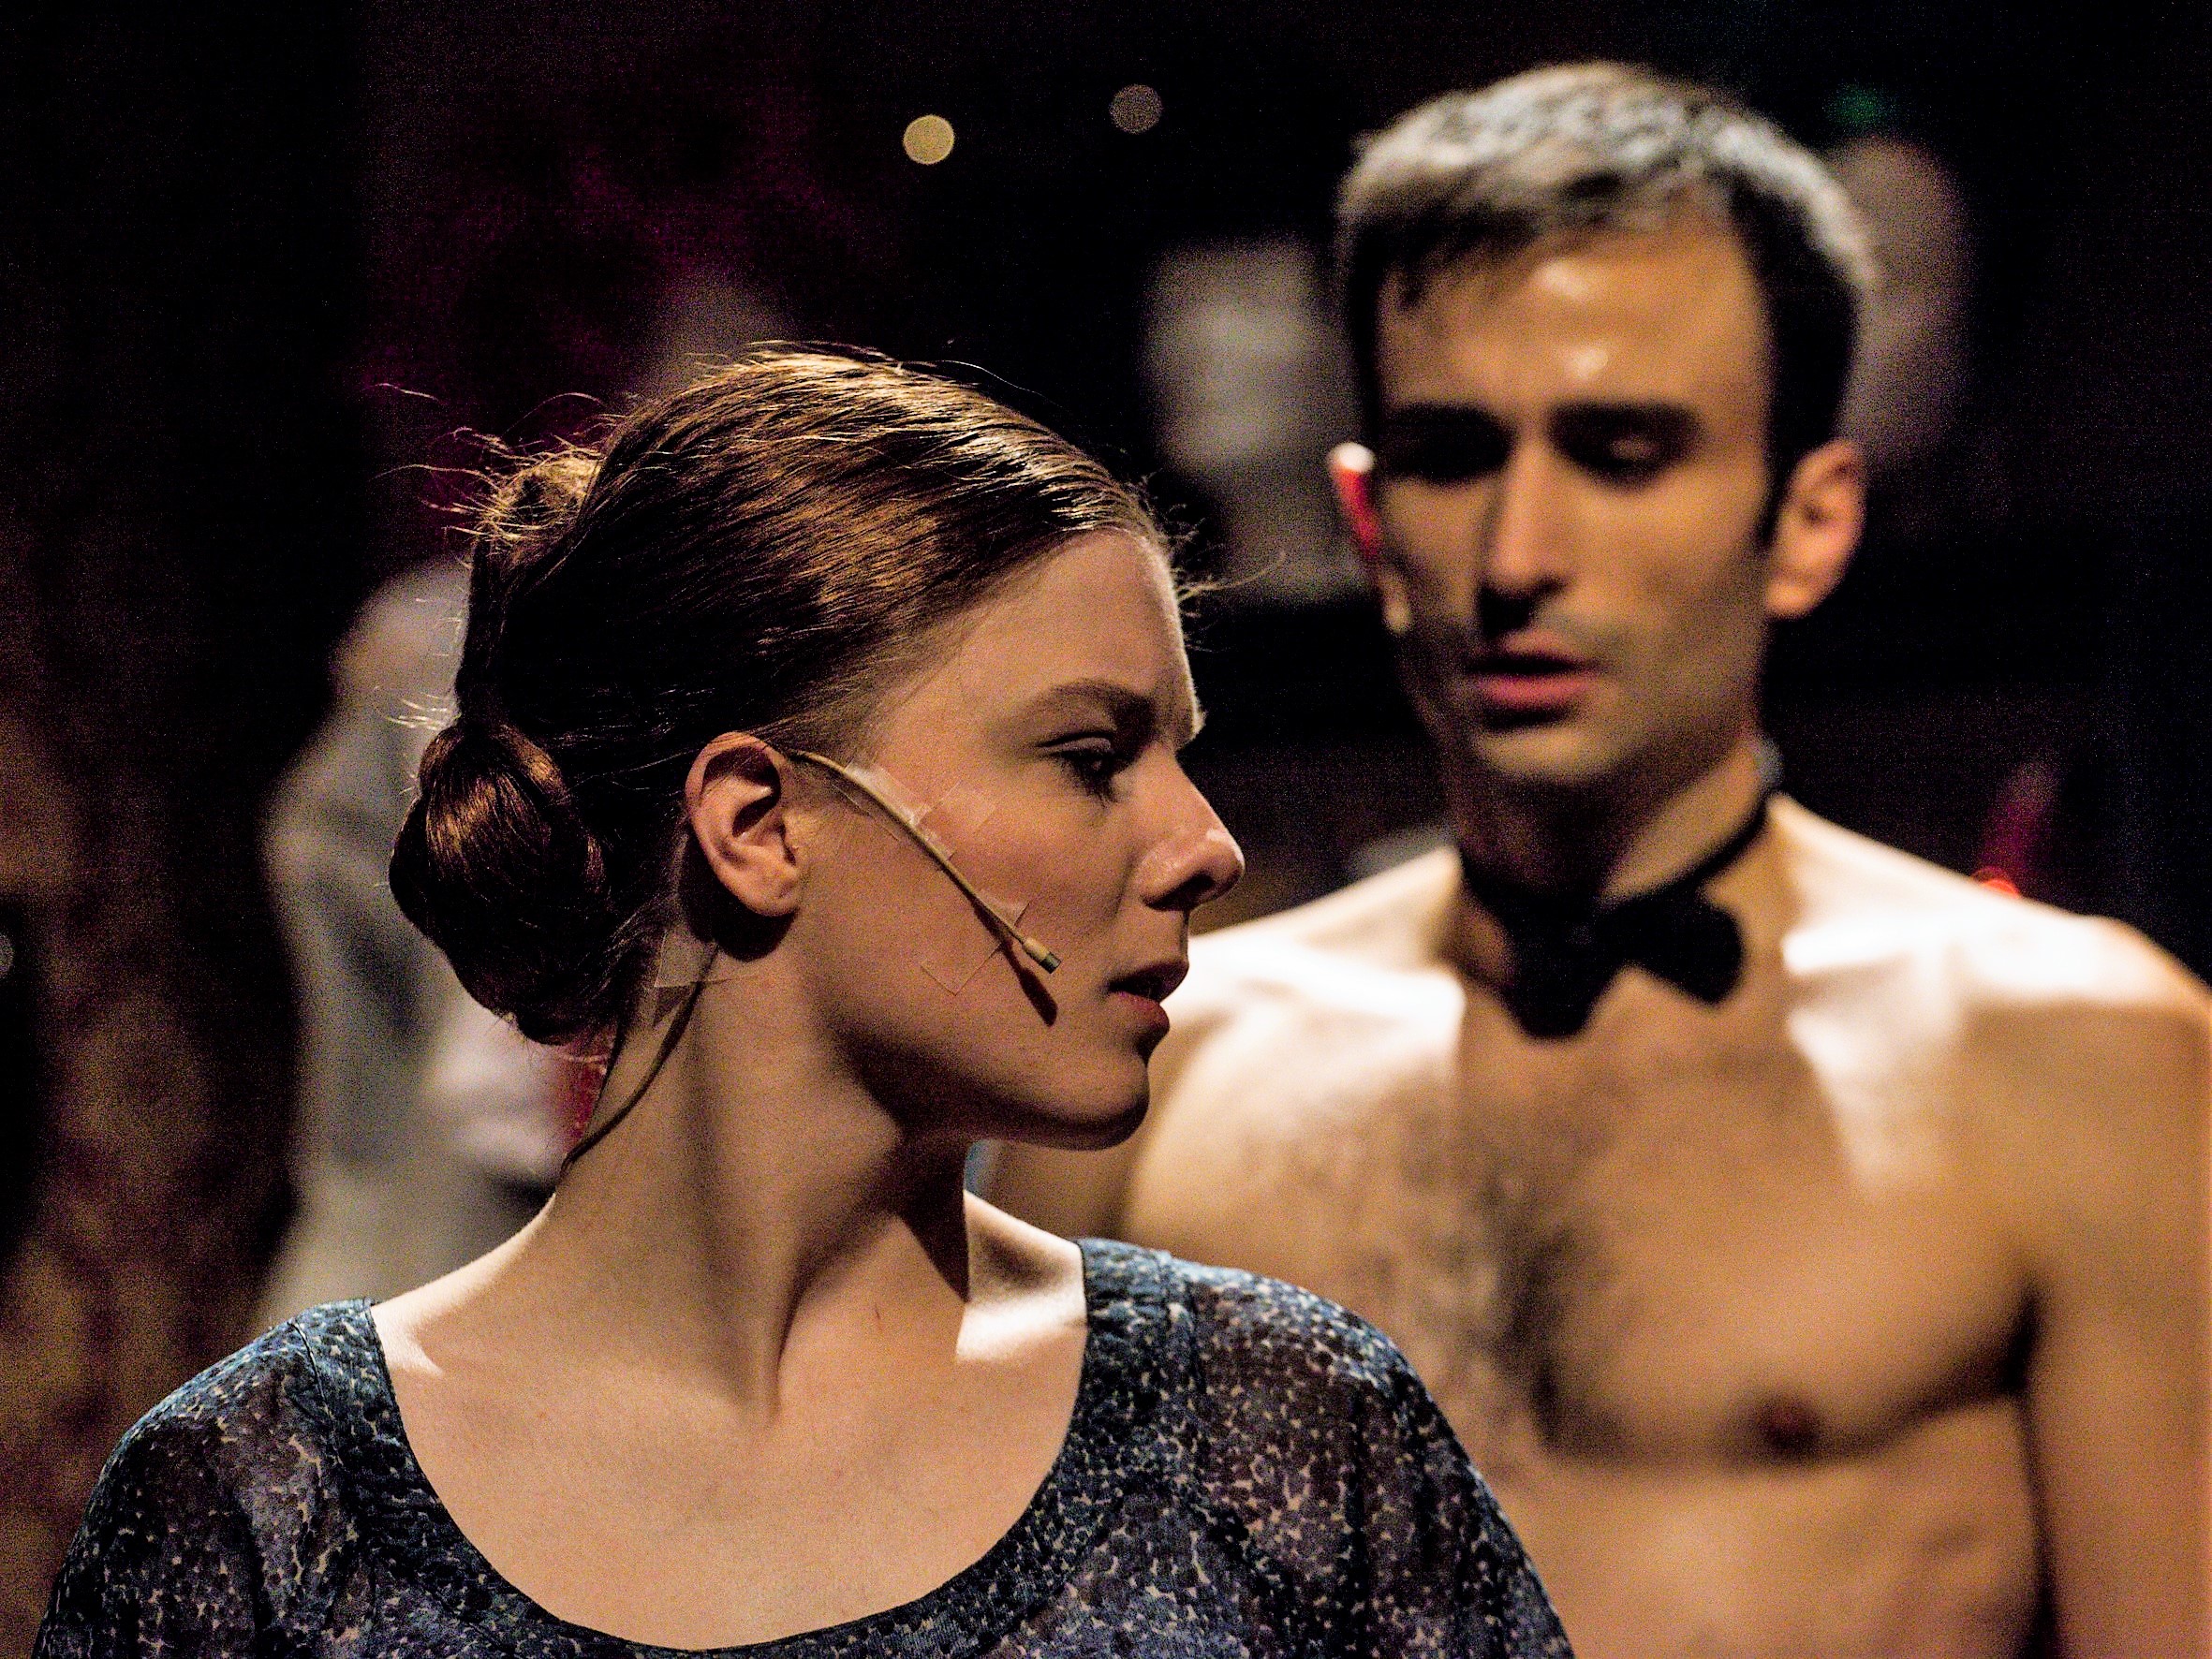 "Der Reigen" in Eggenfelden: Die Ehefrau (Carolin Waltsgott) sucht beim Tänzer (Markus Krenek) die (sexuelle) Erfüllung, er sucht eine Beziehung.